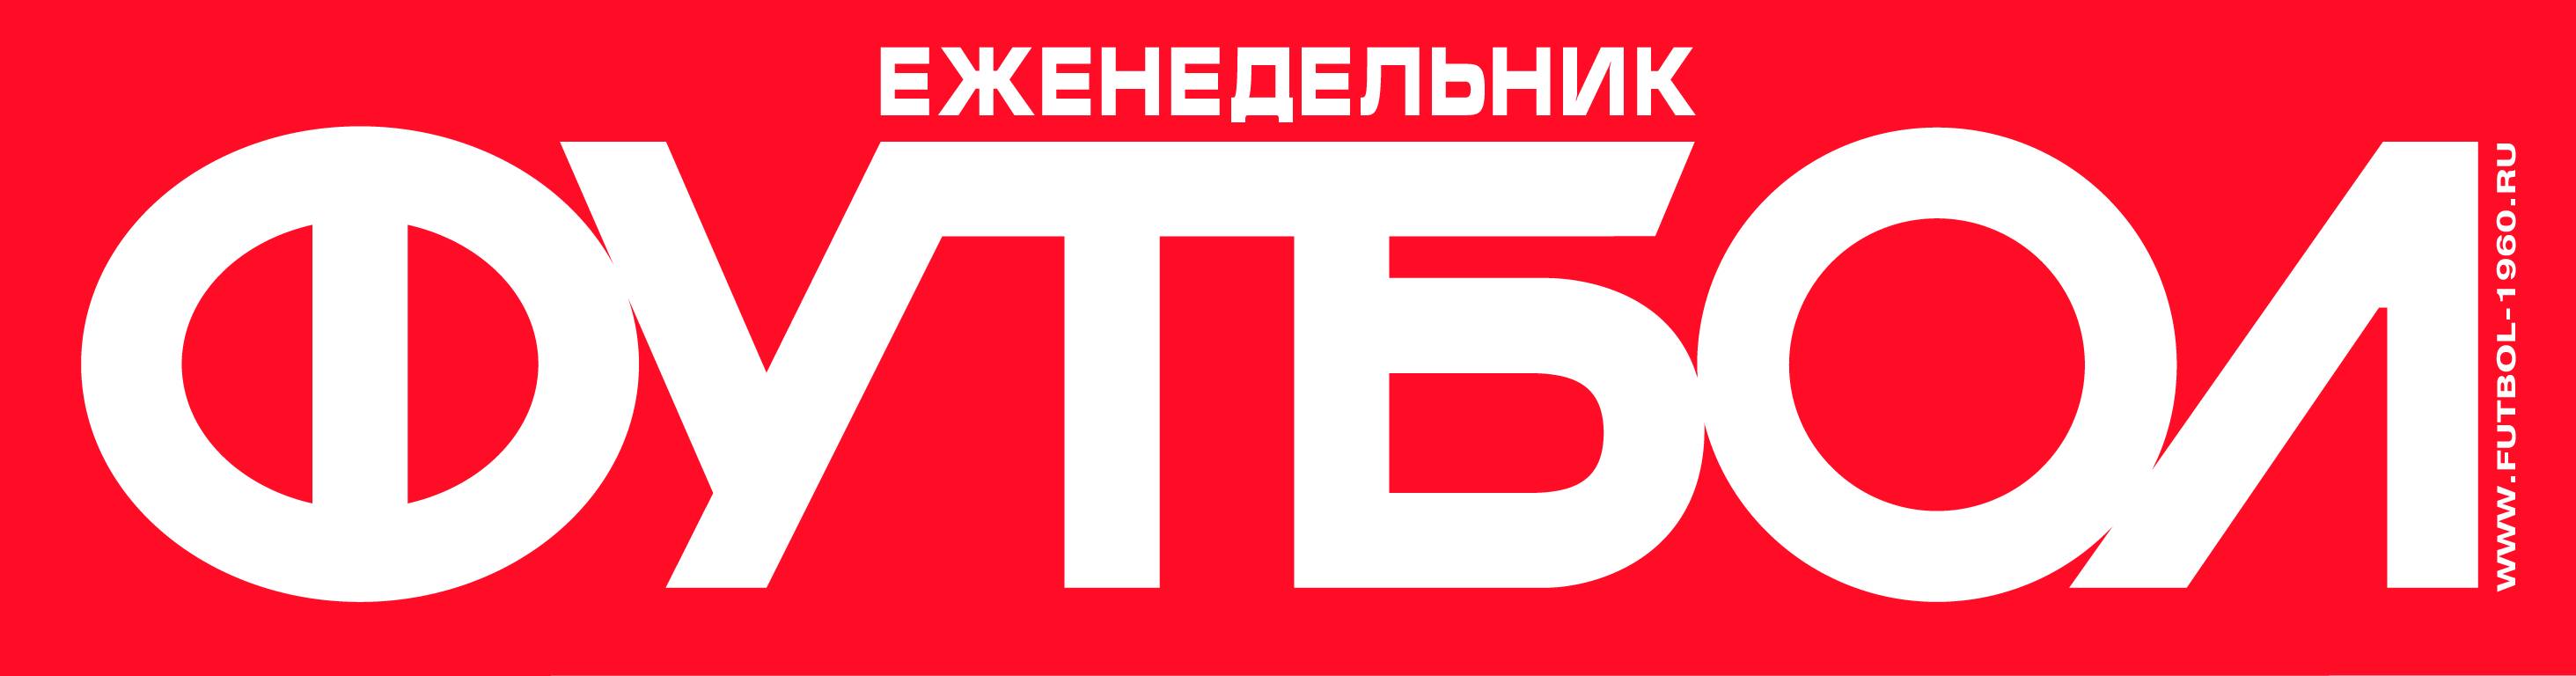 Еженедельник «ФУТБОЛ»: обложки и выпуски ко Дню Победы